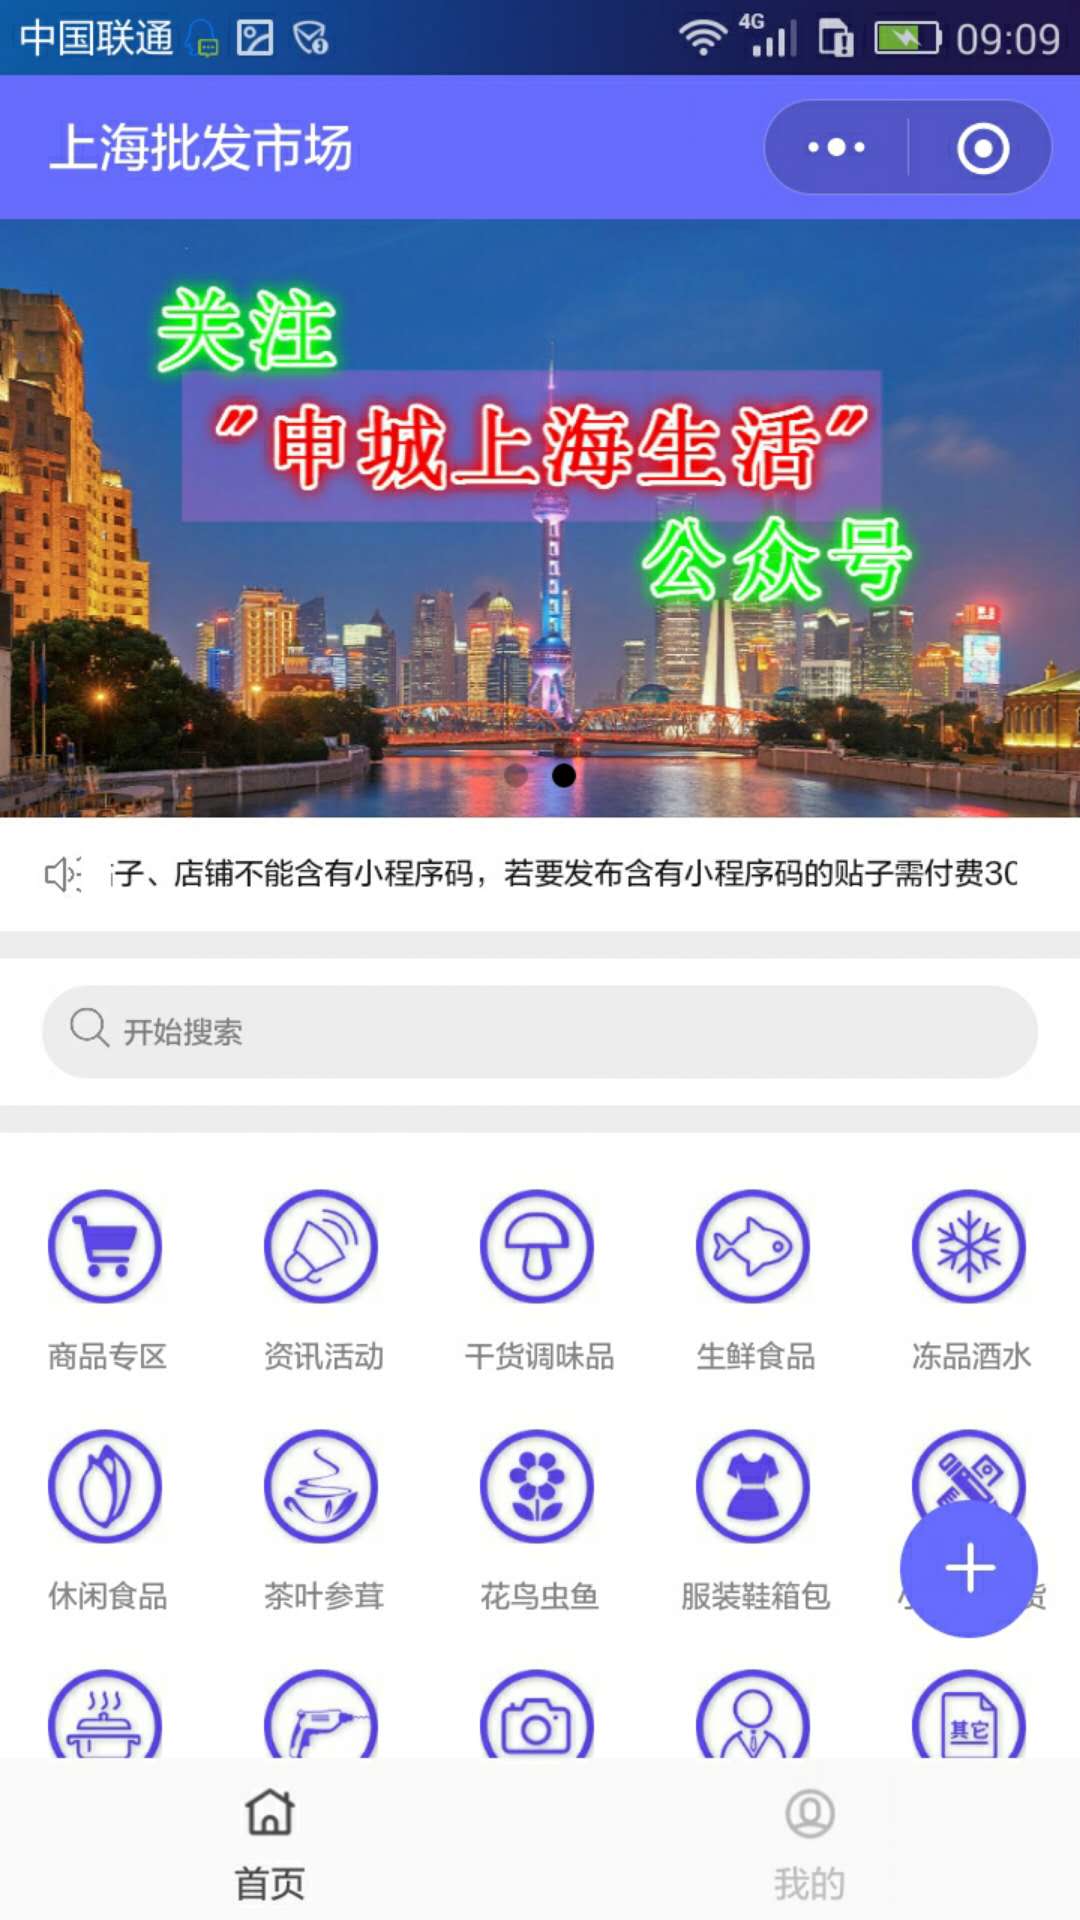 上海批发市场_上海批发市场小程序_上海批发市场微信小程序